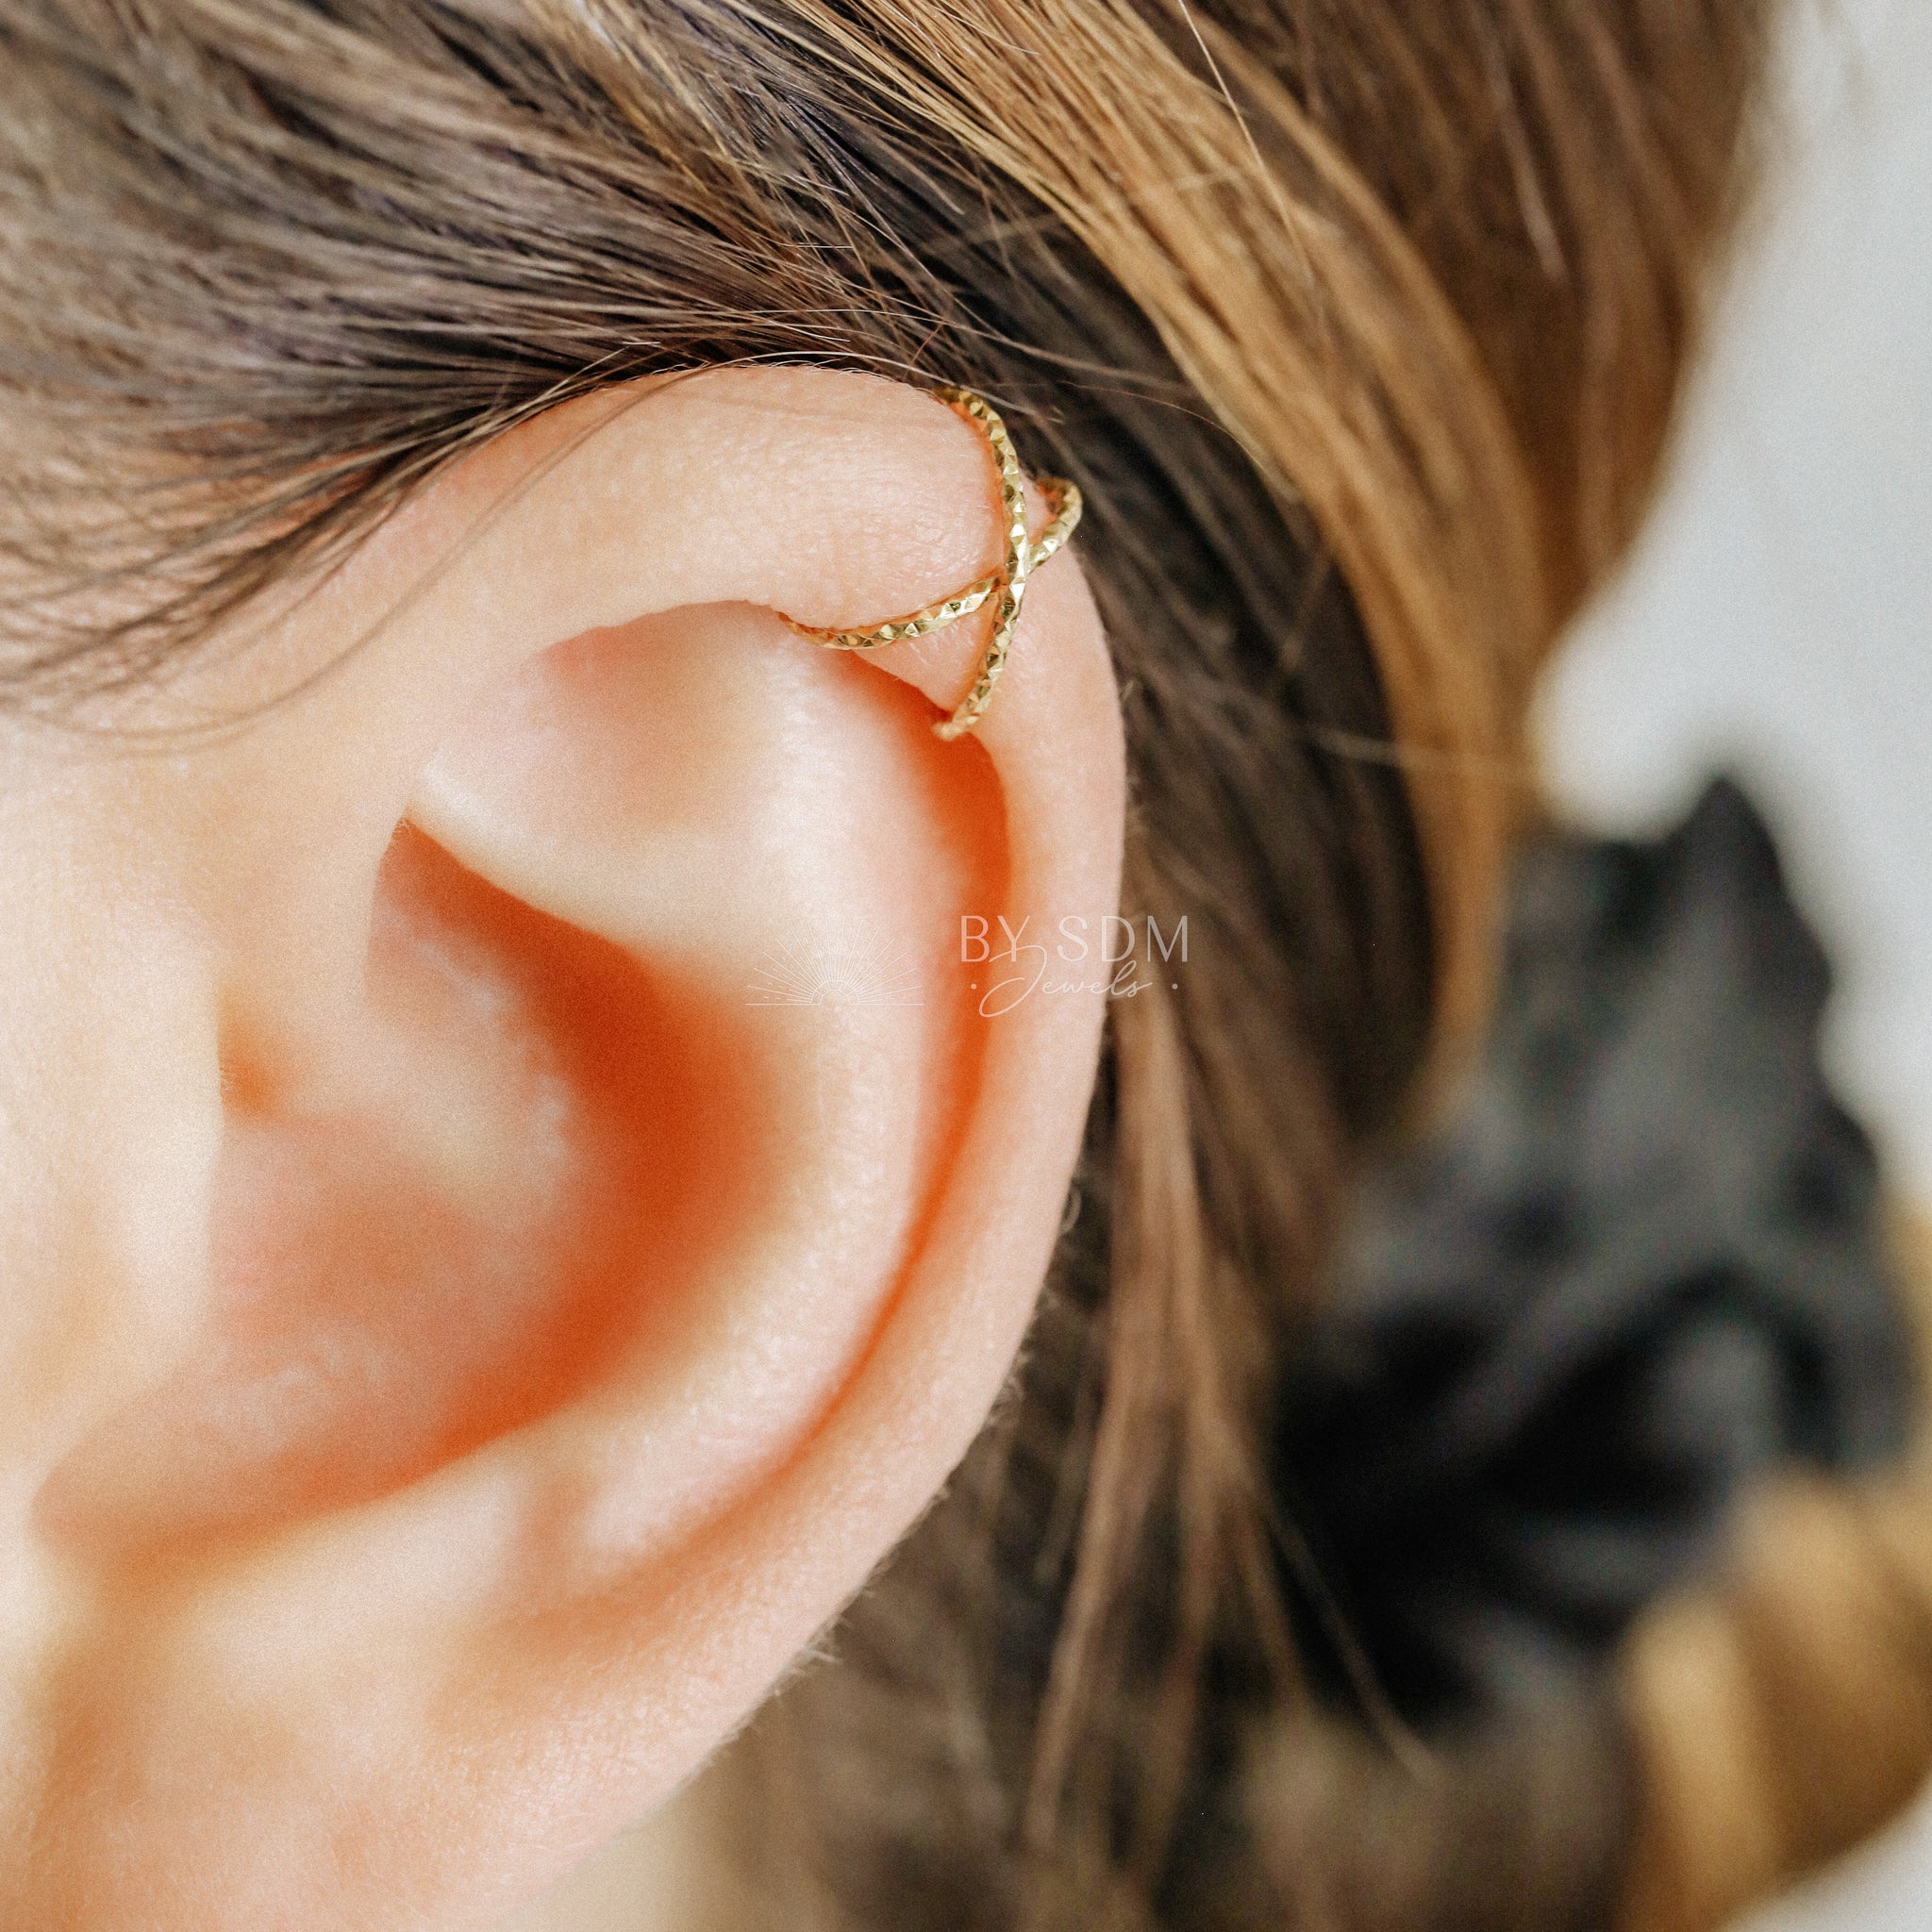  Gold Ear Cuff Earring Criss Cross Style for Orbital